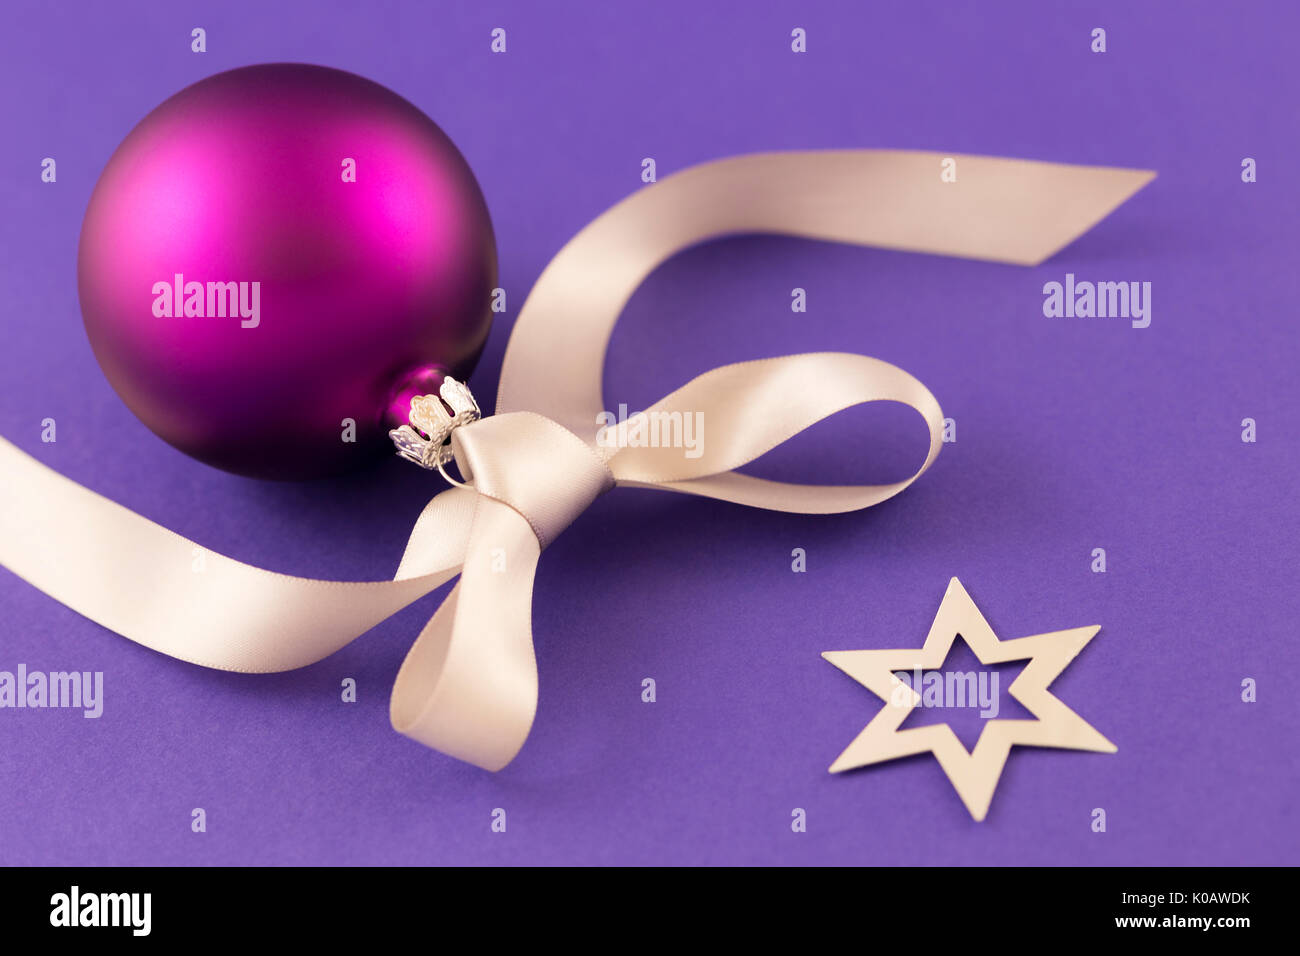 Schönen lila christmas ball mit satin Wirkung, grau Geschenkband und metallic silber Sterne auf lila Hintergrund. Stockfoto